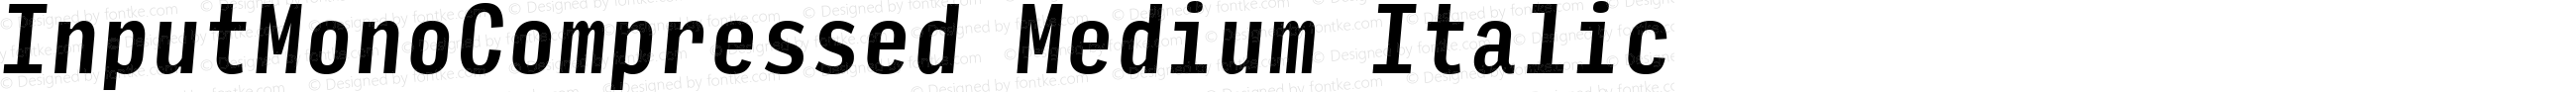 InputMonoCompressed Medium Italic